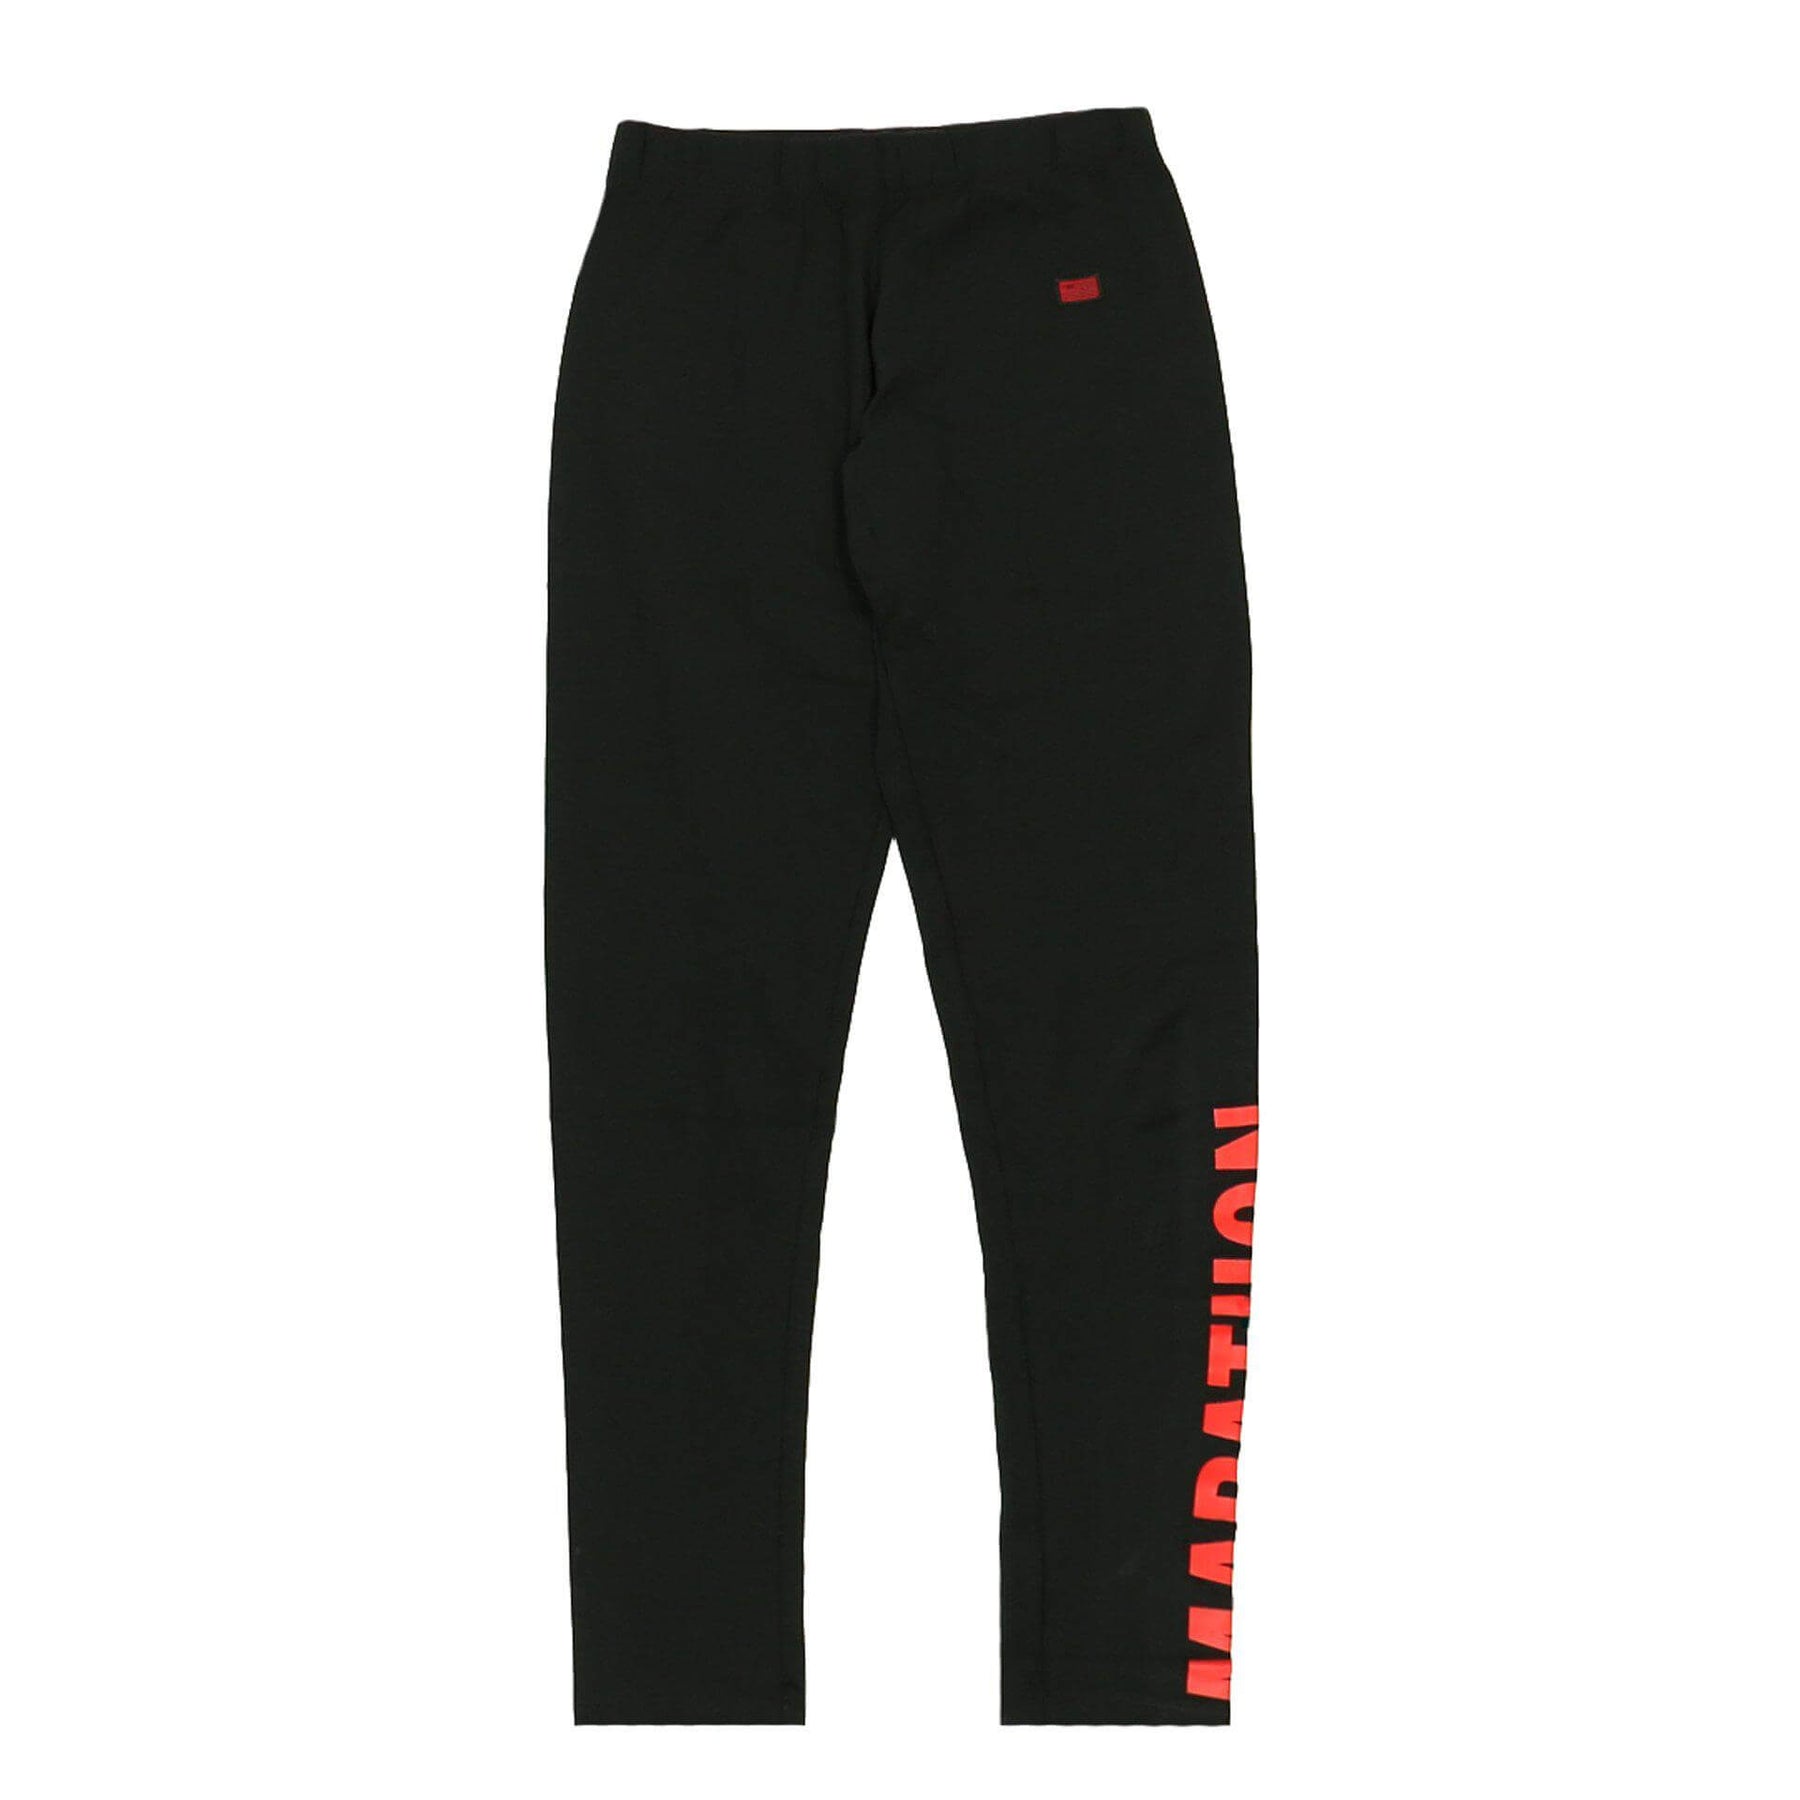 TMC Leggings - Black/Red – The Marathon Clothing